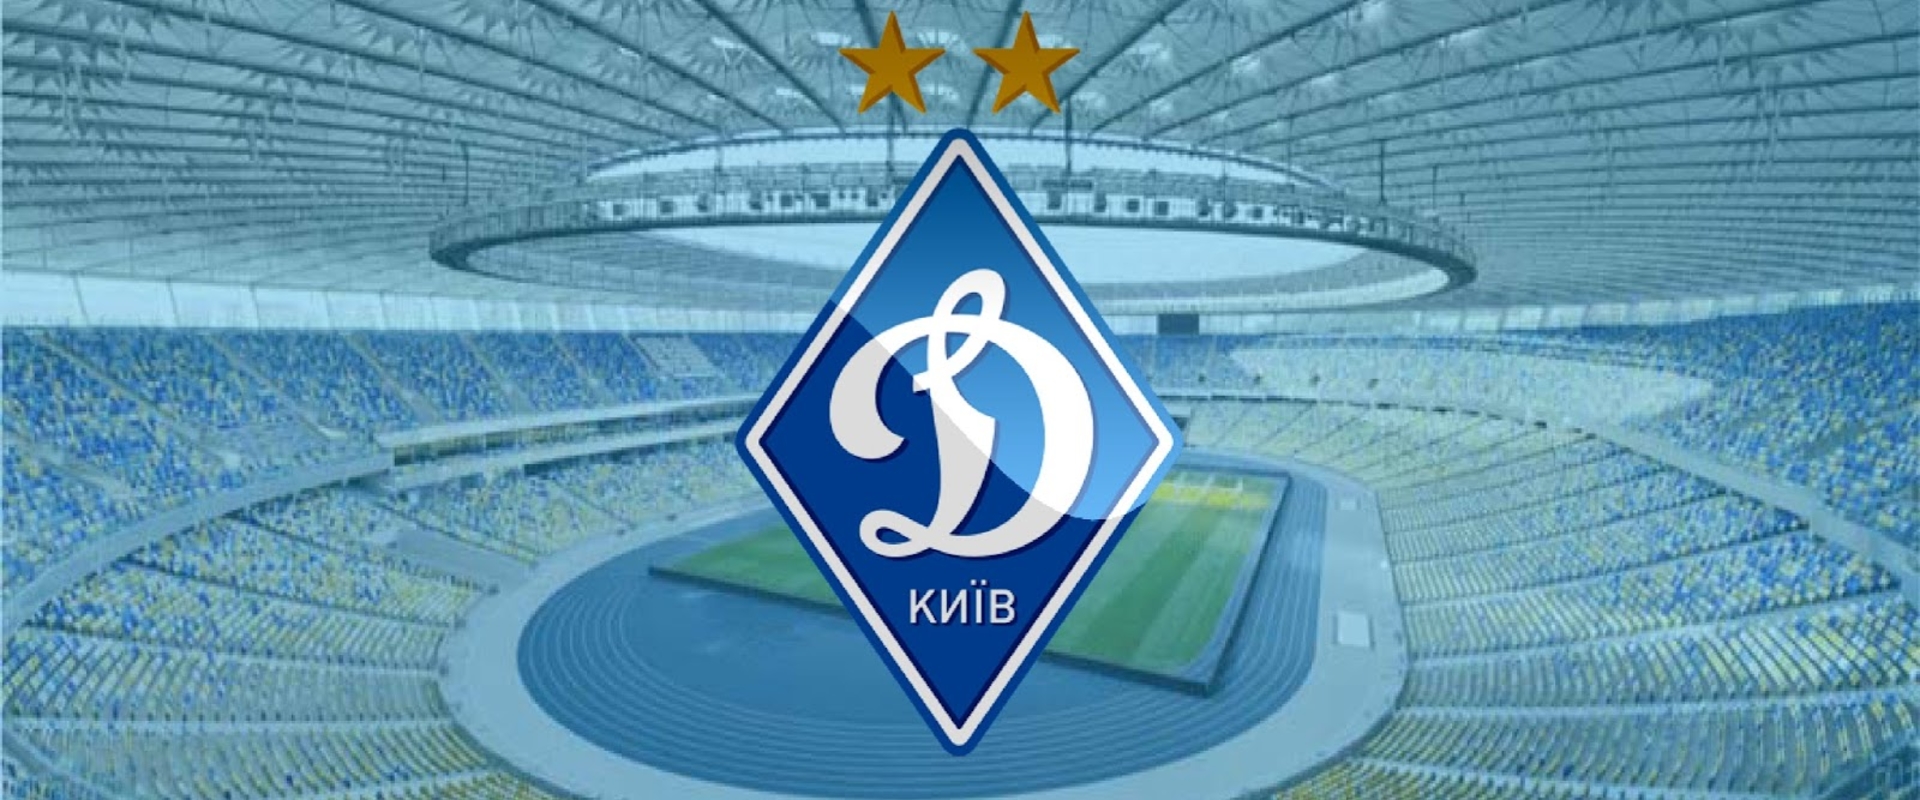 Milyen belülről a Dinamo Kijev Esport? A vezető válaszol!